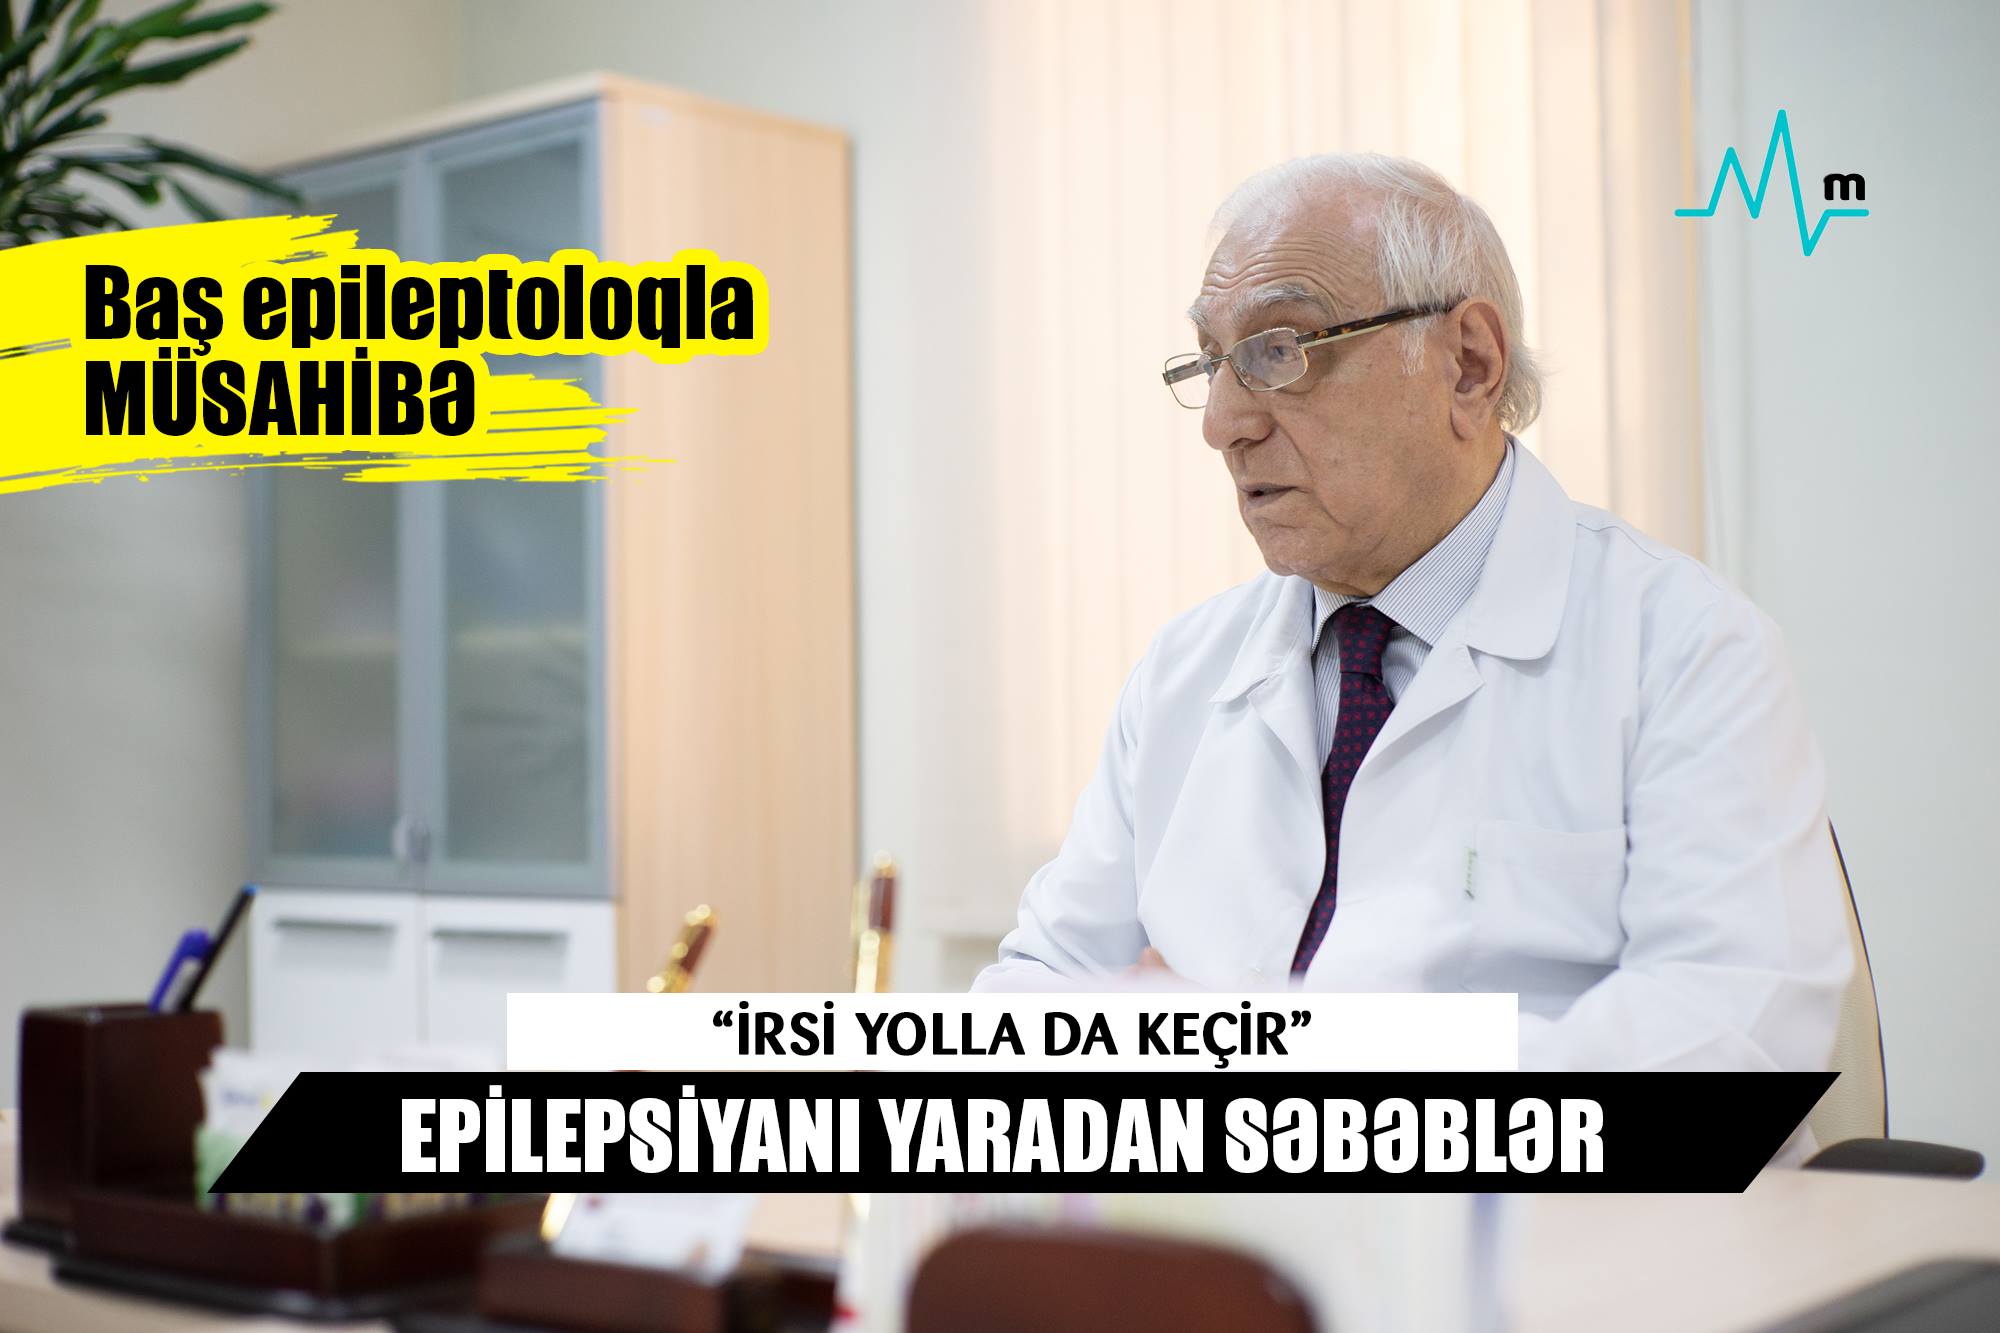  Epilepsiyanı yaradan səbəblər- “İrsi yolla da keçir”  - Professor Şərif Mahalovla MÜSAHİBƏ